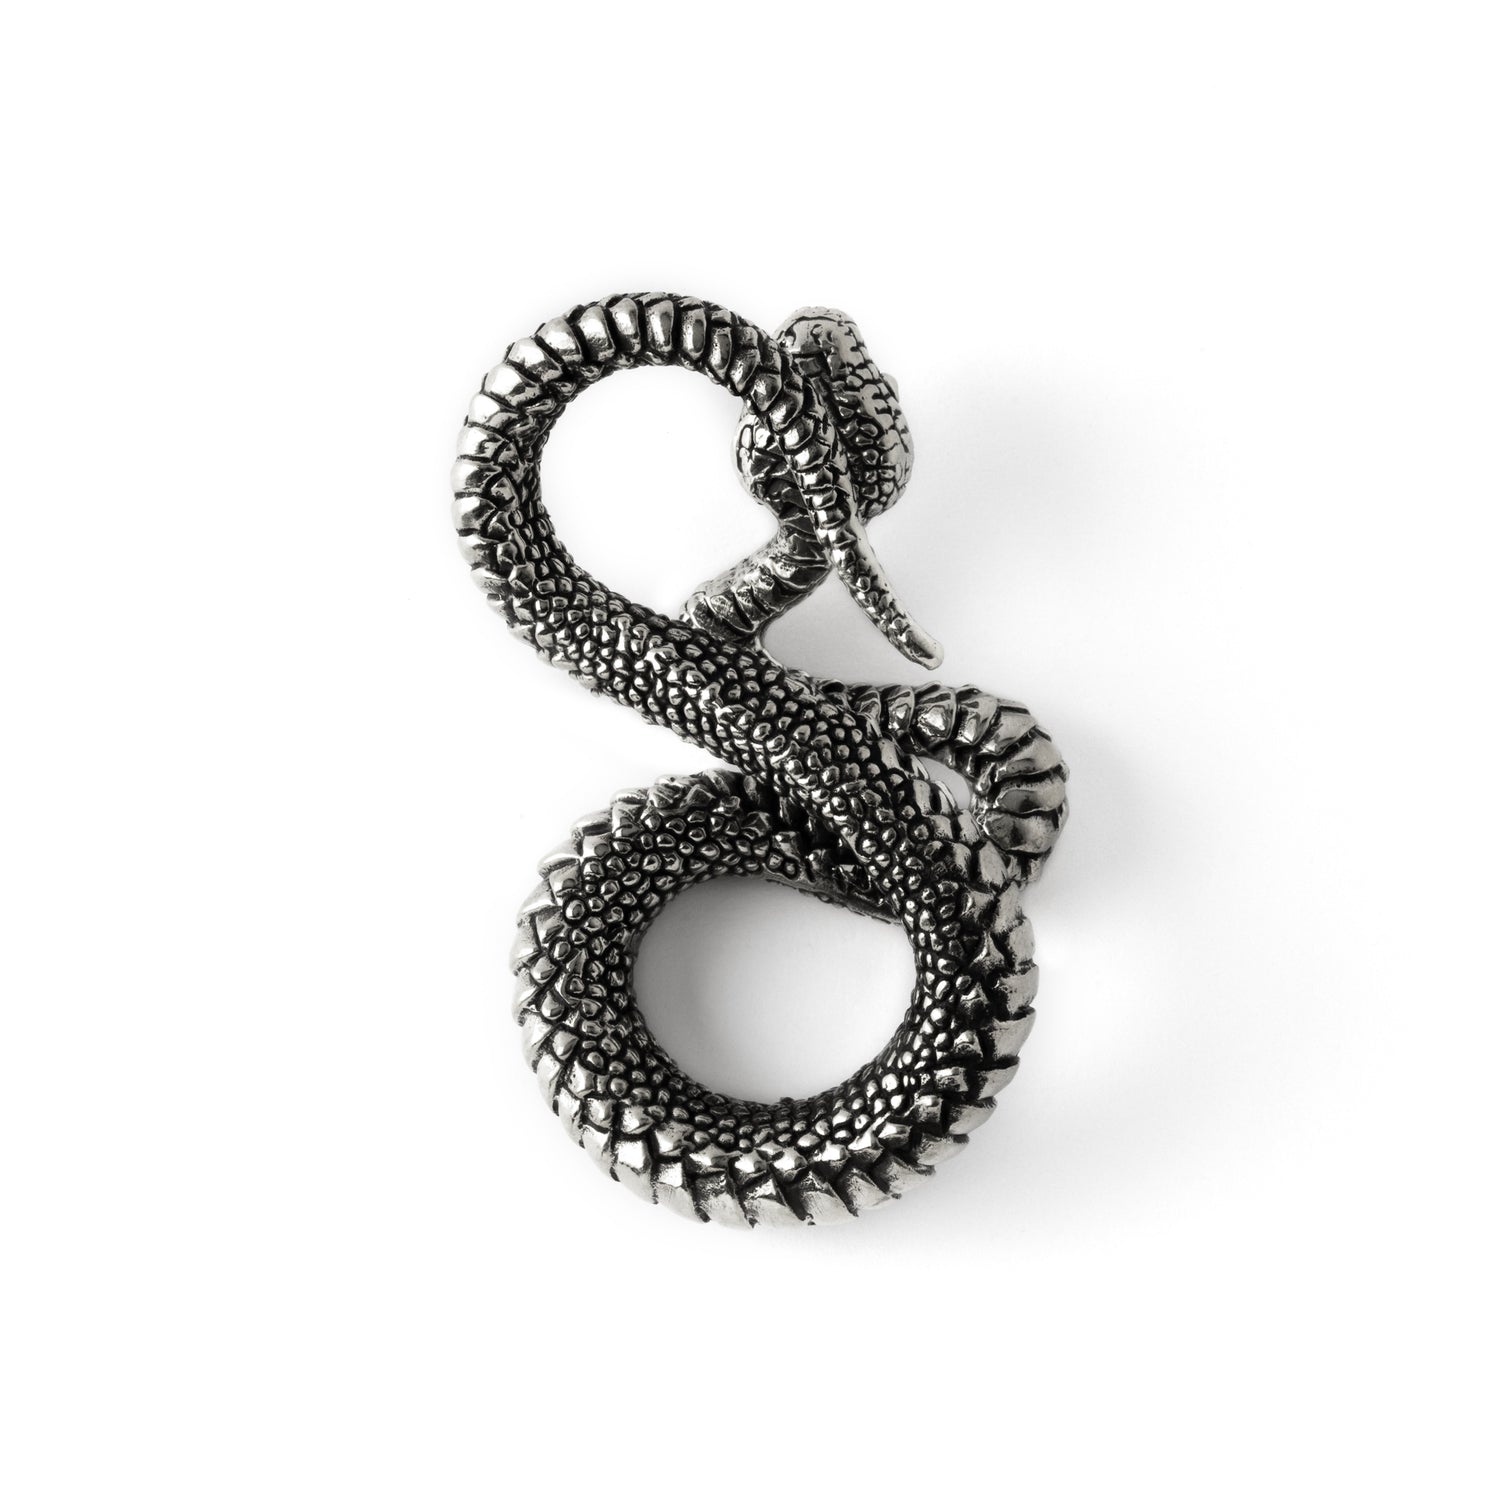 single silver brass snake ear weights hangers in infinity shape back view